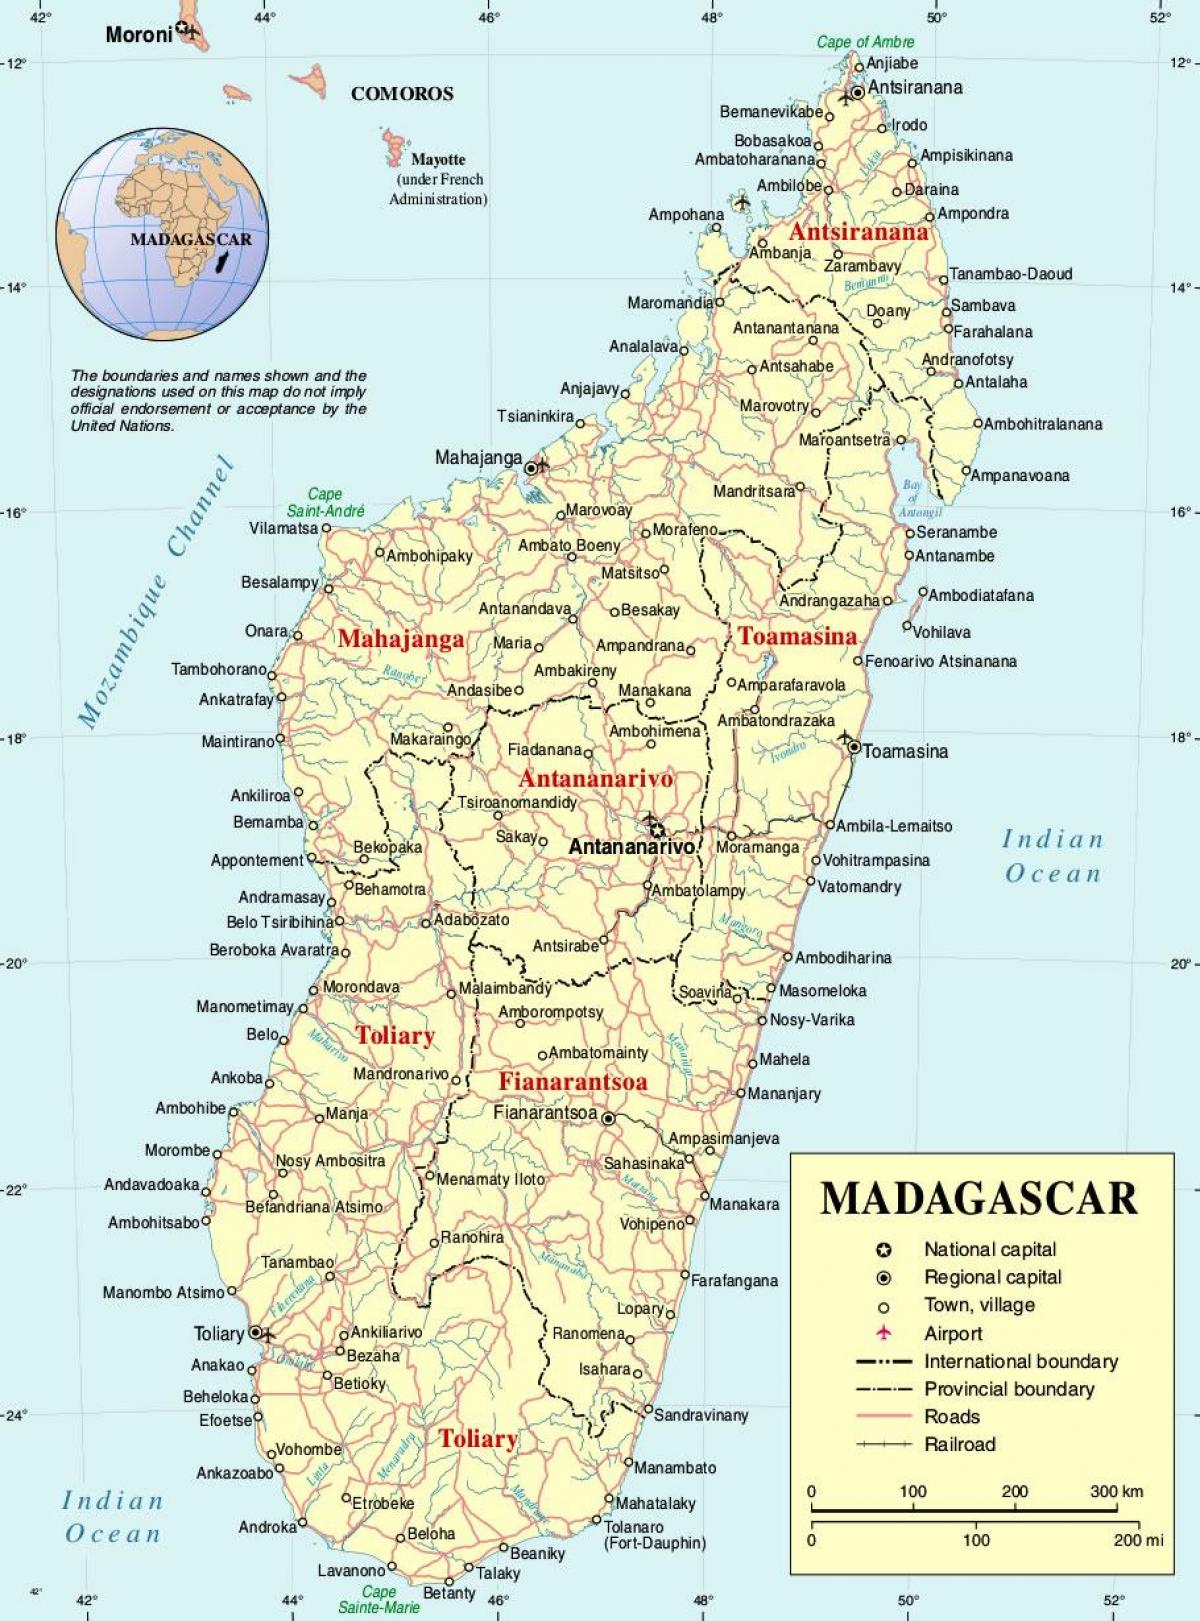 ماداگاسکار نقشه شهرها